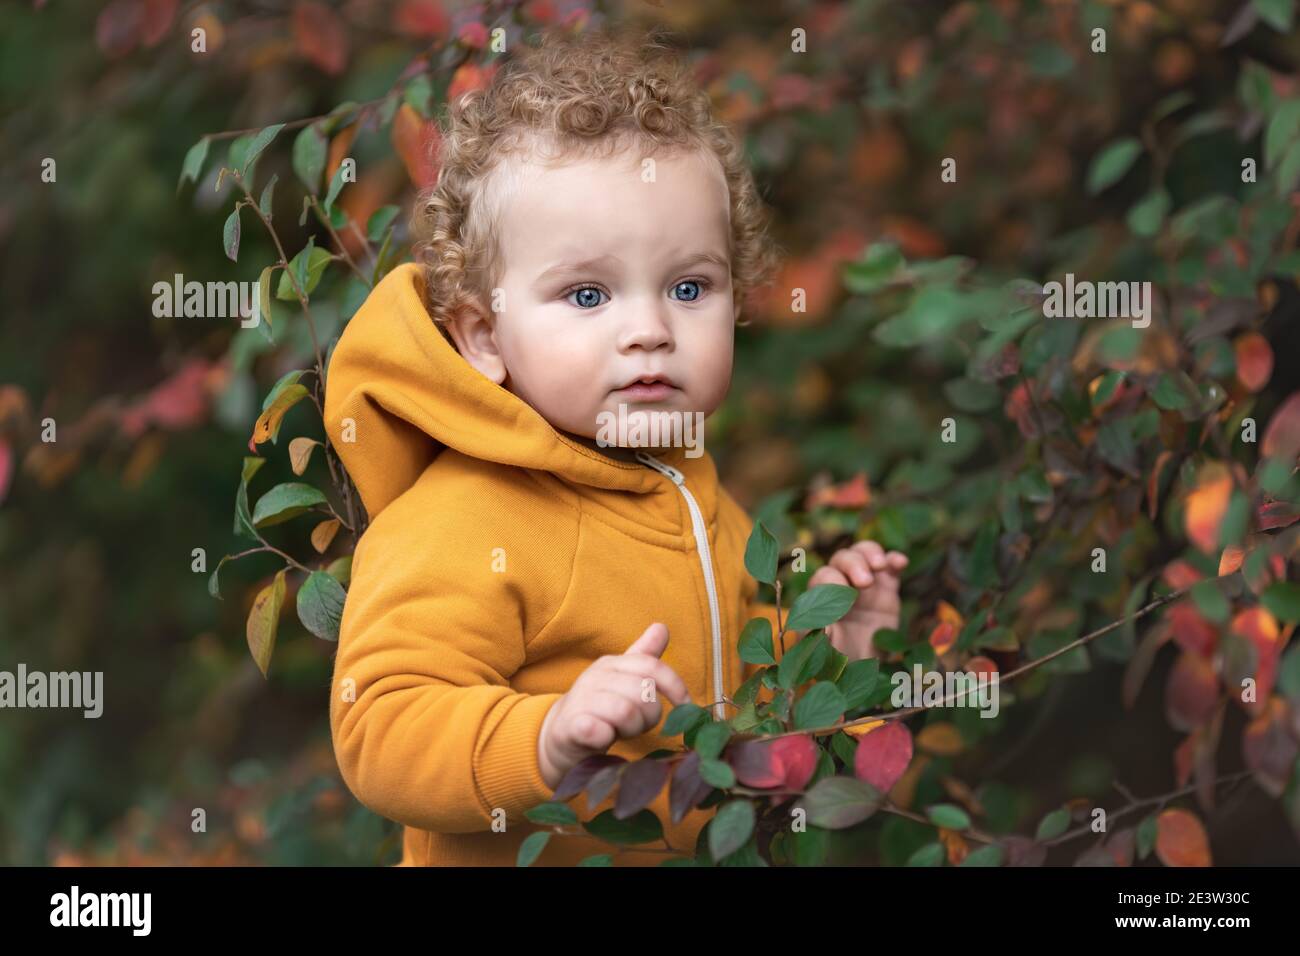 Joli petit garçon avec des cheveux bouclés et de grands yeux bleus parmi les feuilles d'automne Banque D'Images